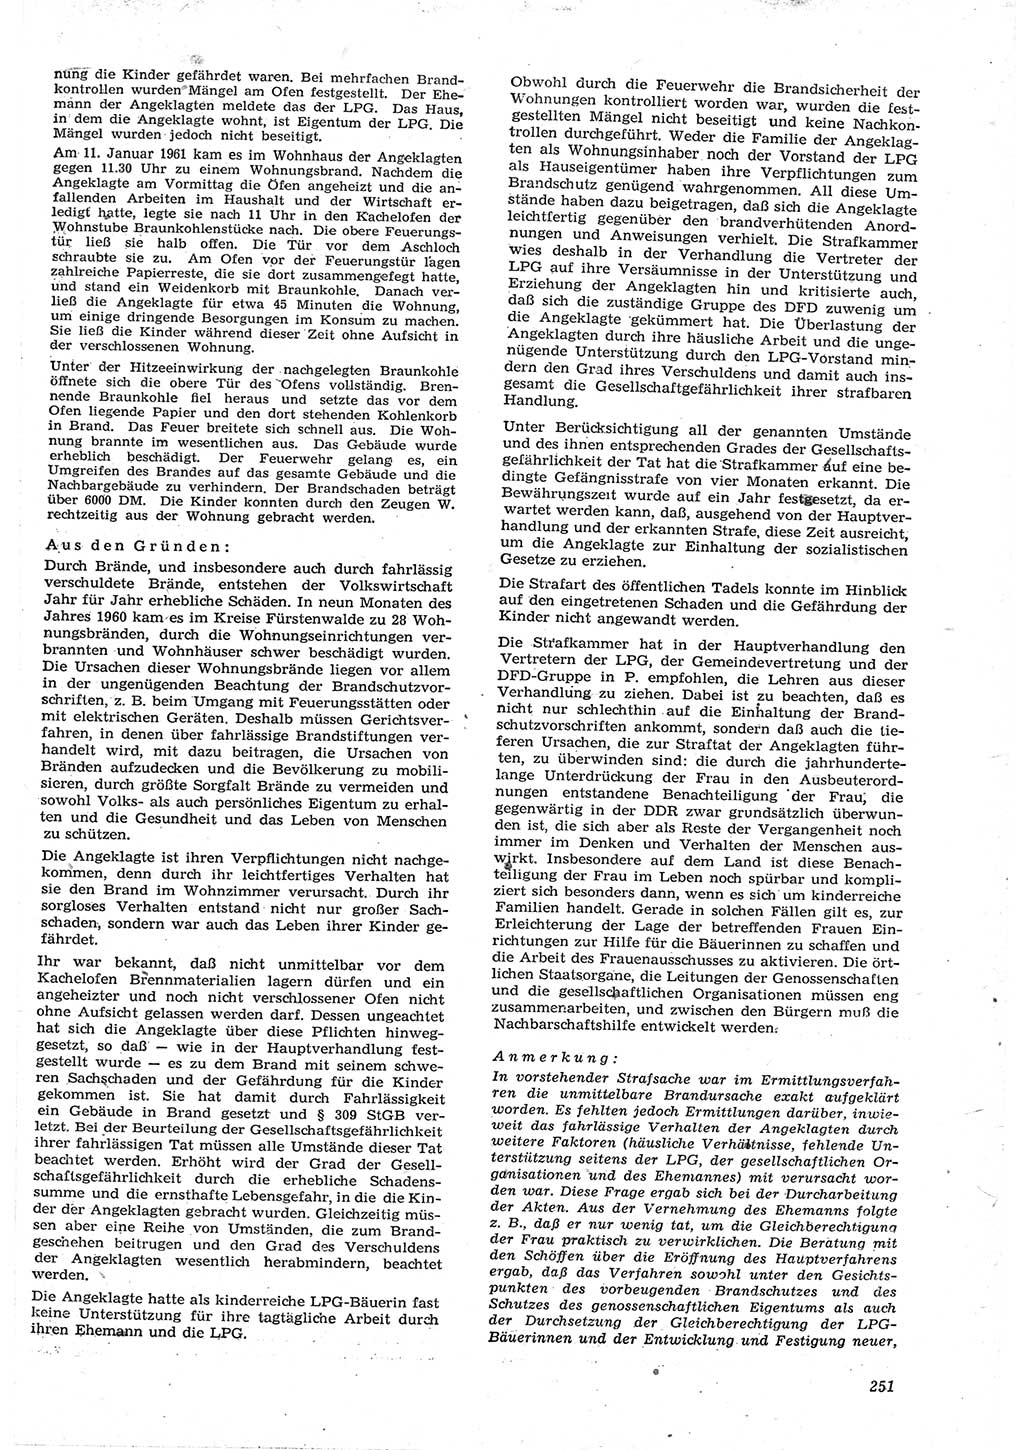 Neue Justiz (NJ), Zeitschrift für Recht und Rechtswissenschaft [Deutsche Demokratische Republik (DDR)], 15. Jahrgang 1961, Seite 251 (NJ DDR 1961, S. 251)